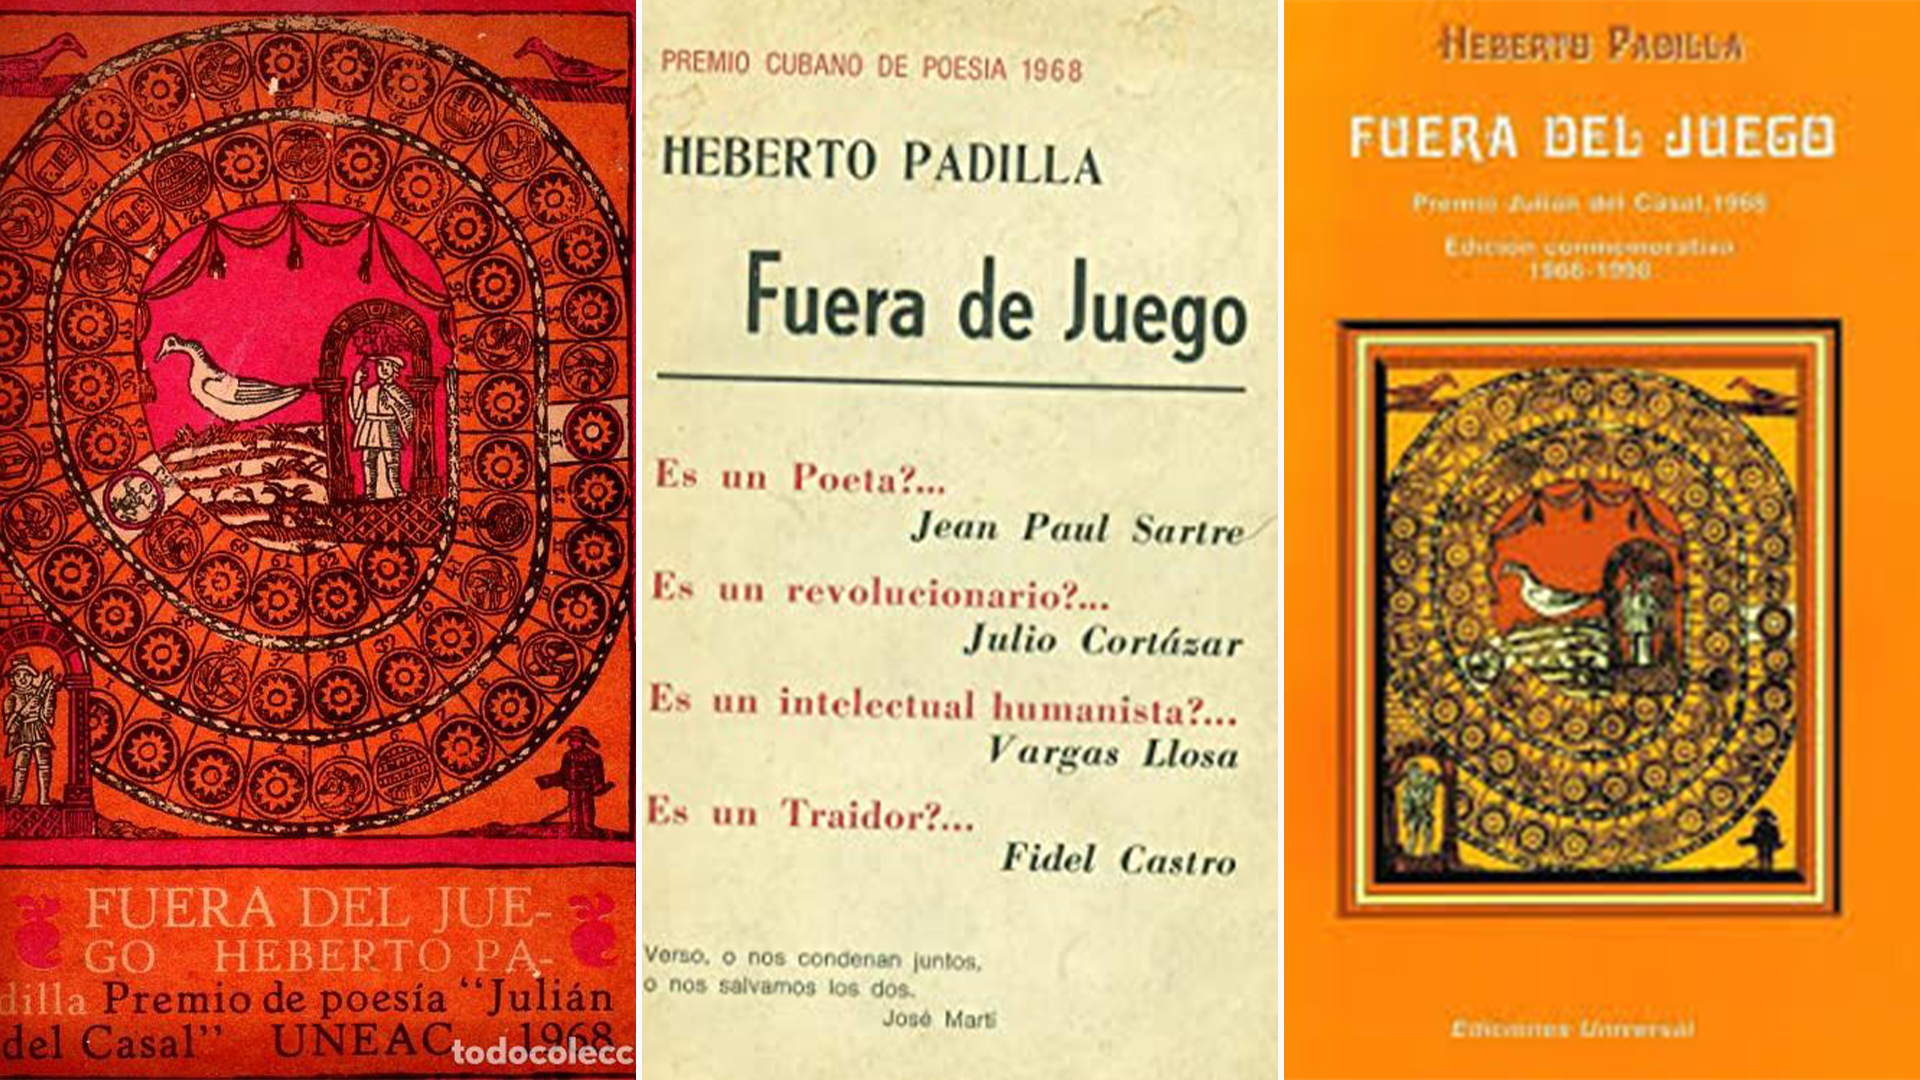 El libro de poemas de Heberto Padilla que el régimen cubano no consideró suficientemente "revolucionario"